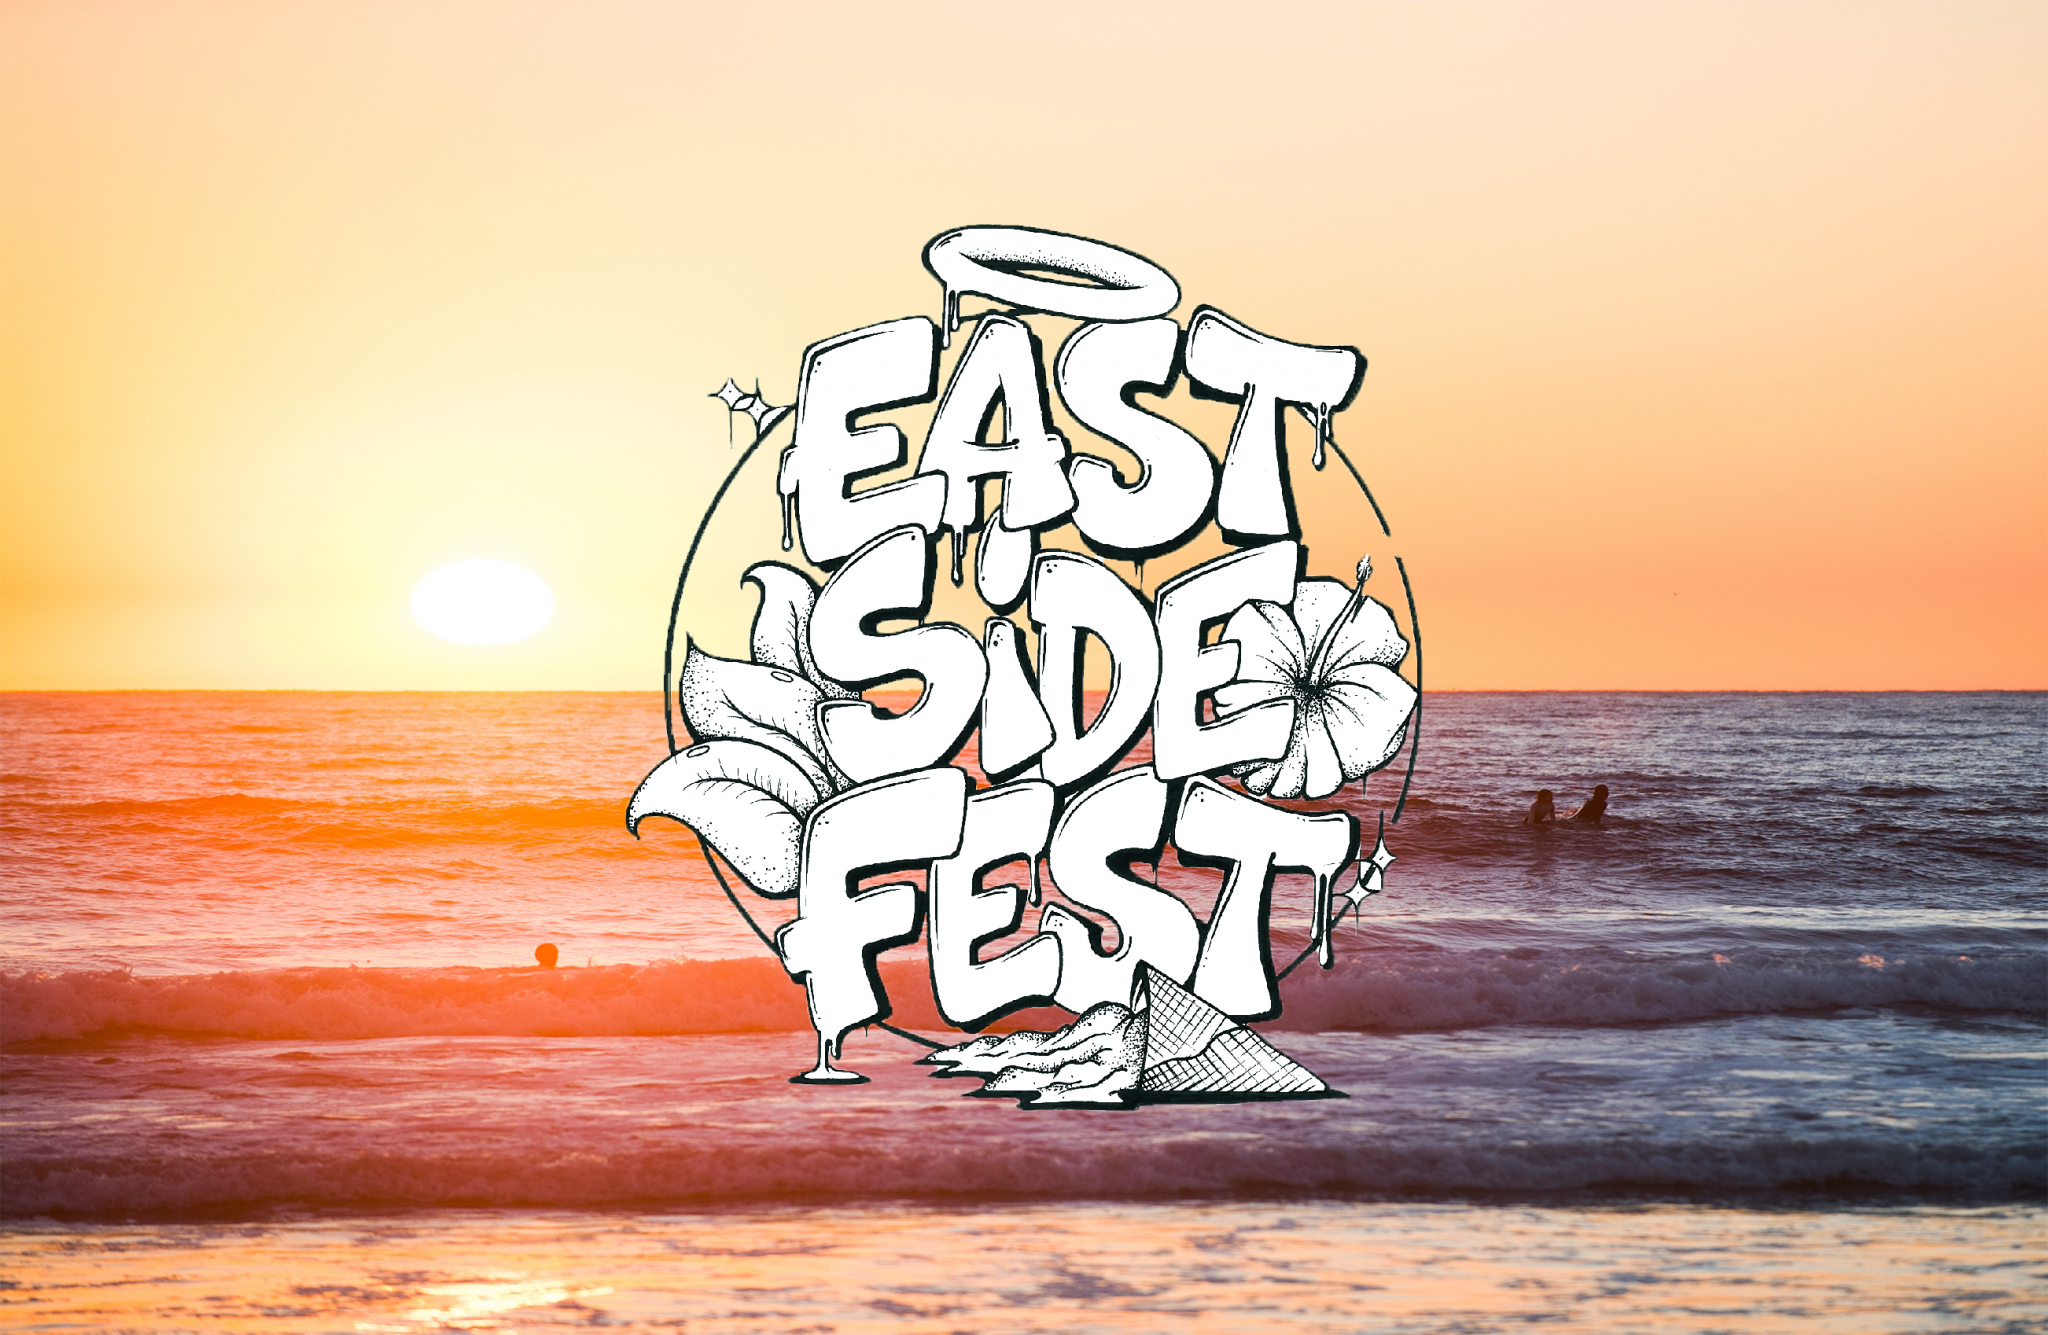 1st East Side Festival